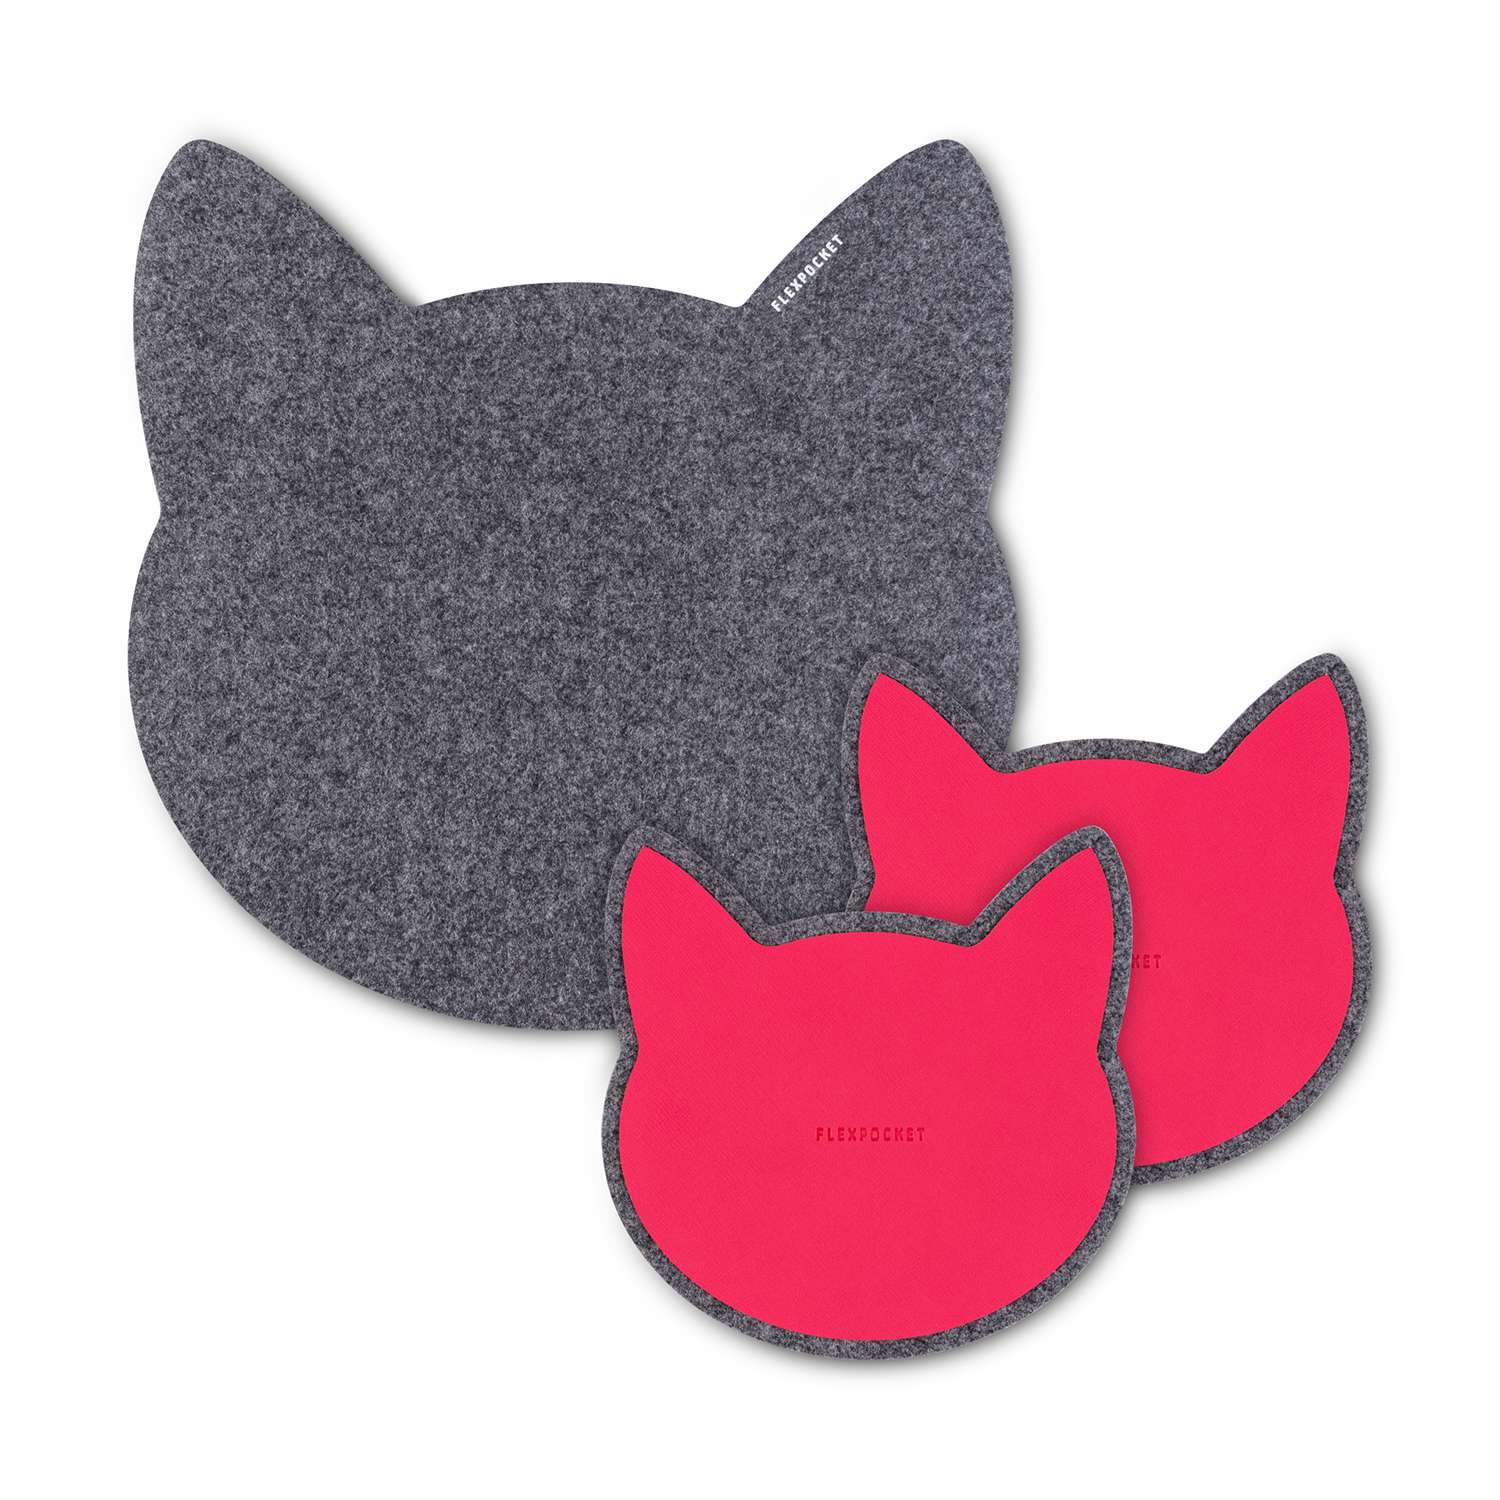 Настольный коврик Flexpocket для мыши в виде кошки + комплект с подставкой под кружку темно-серый - фото 1